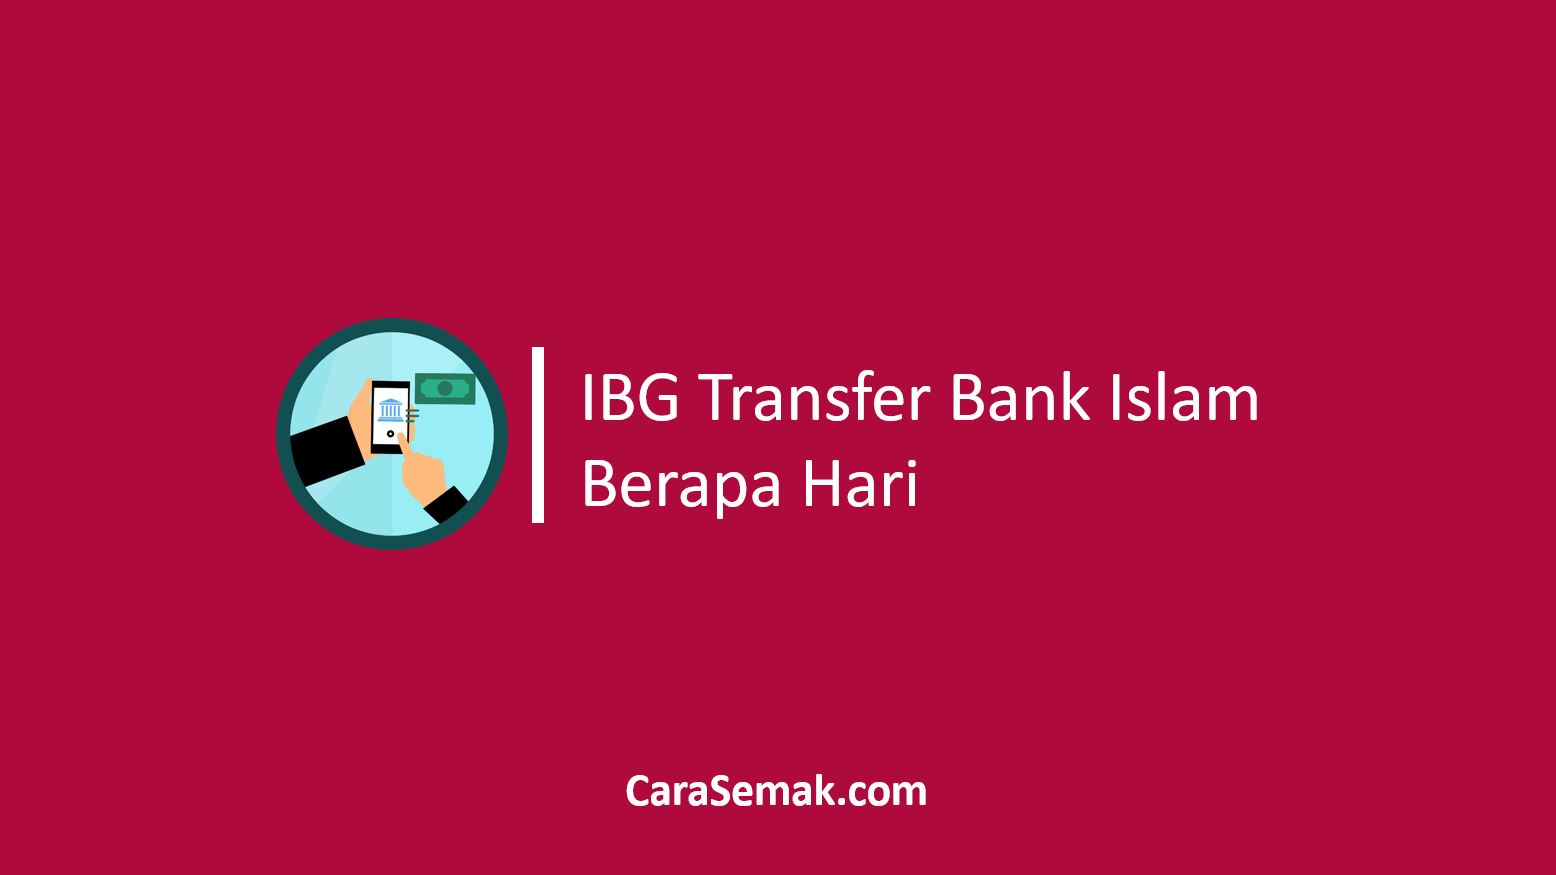 IBG Transfer Bank Islam Berapa Hari